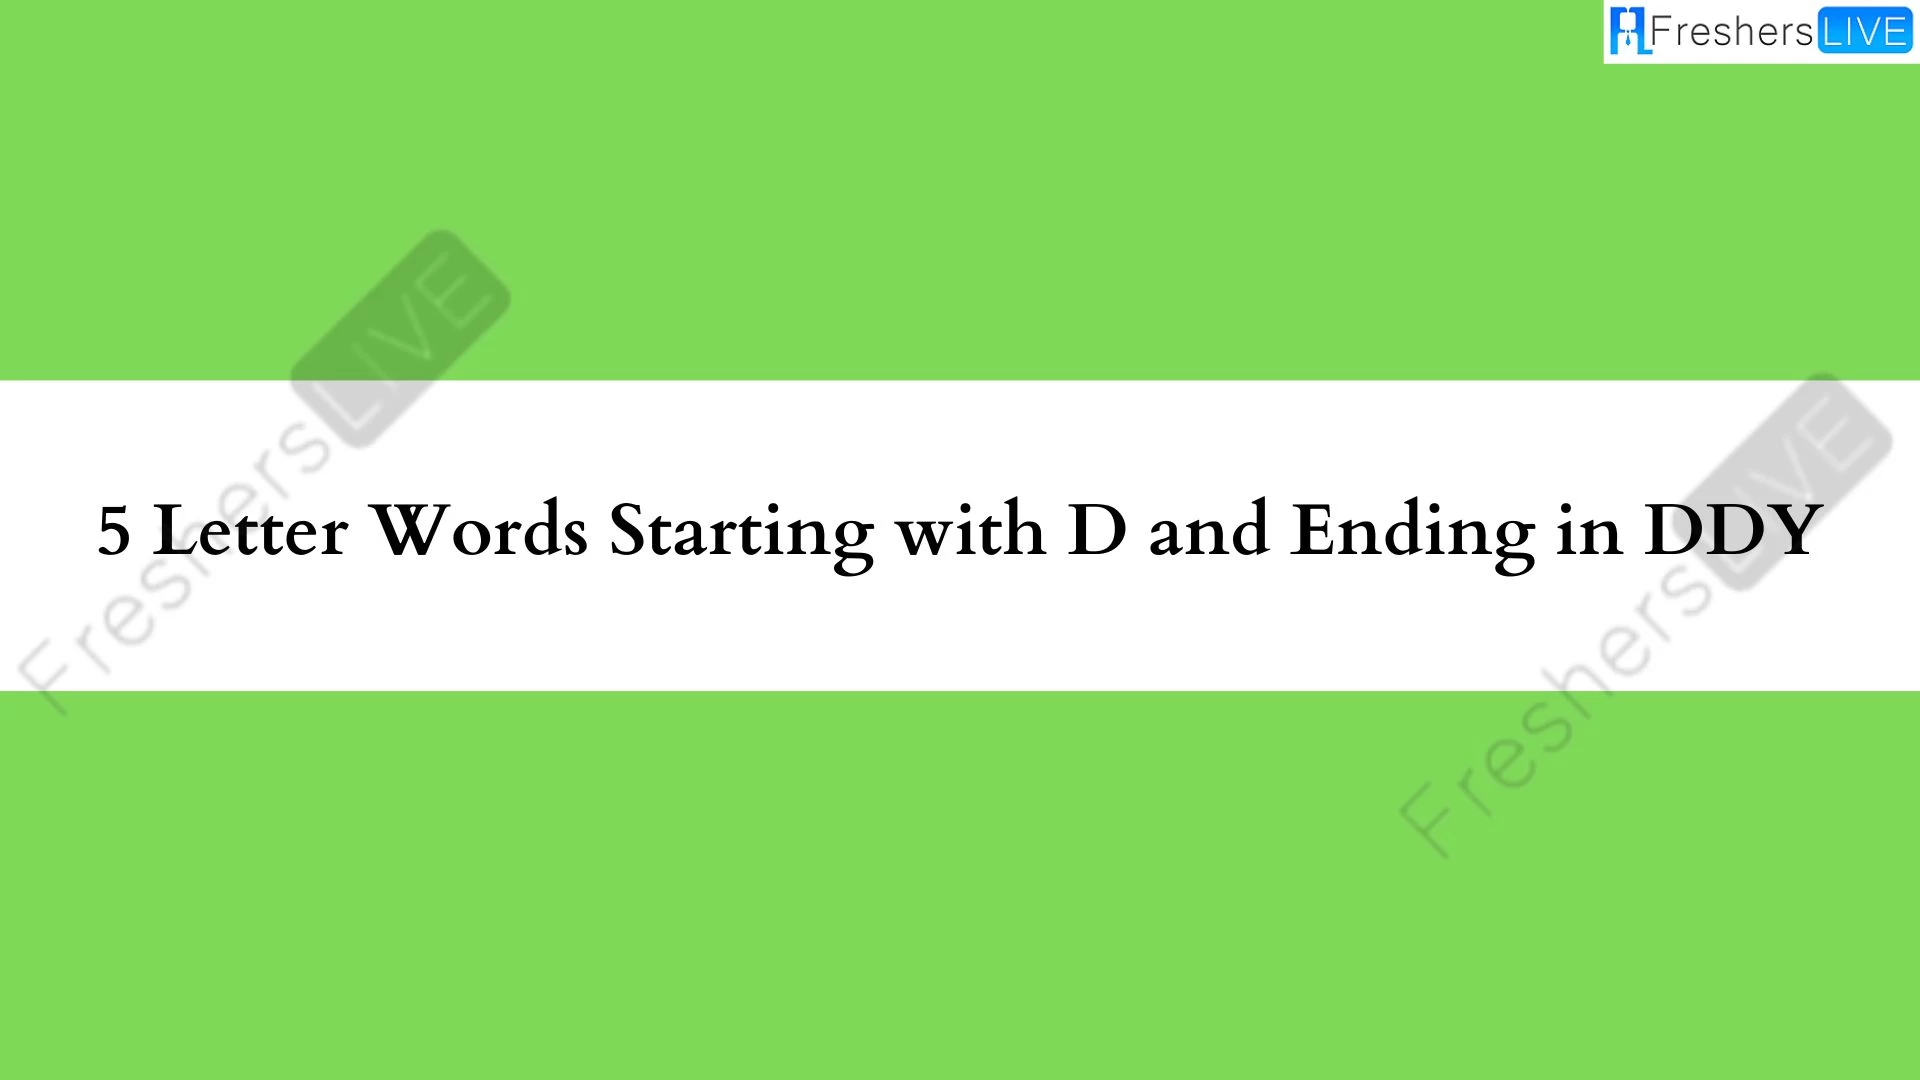 Palabras de 5 letras que comienzan con D y terminan con DDI